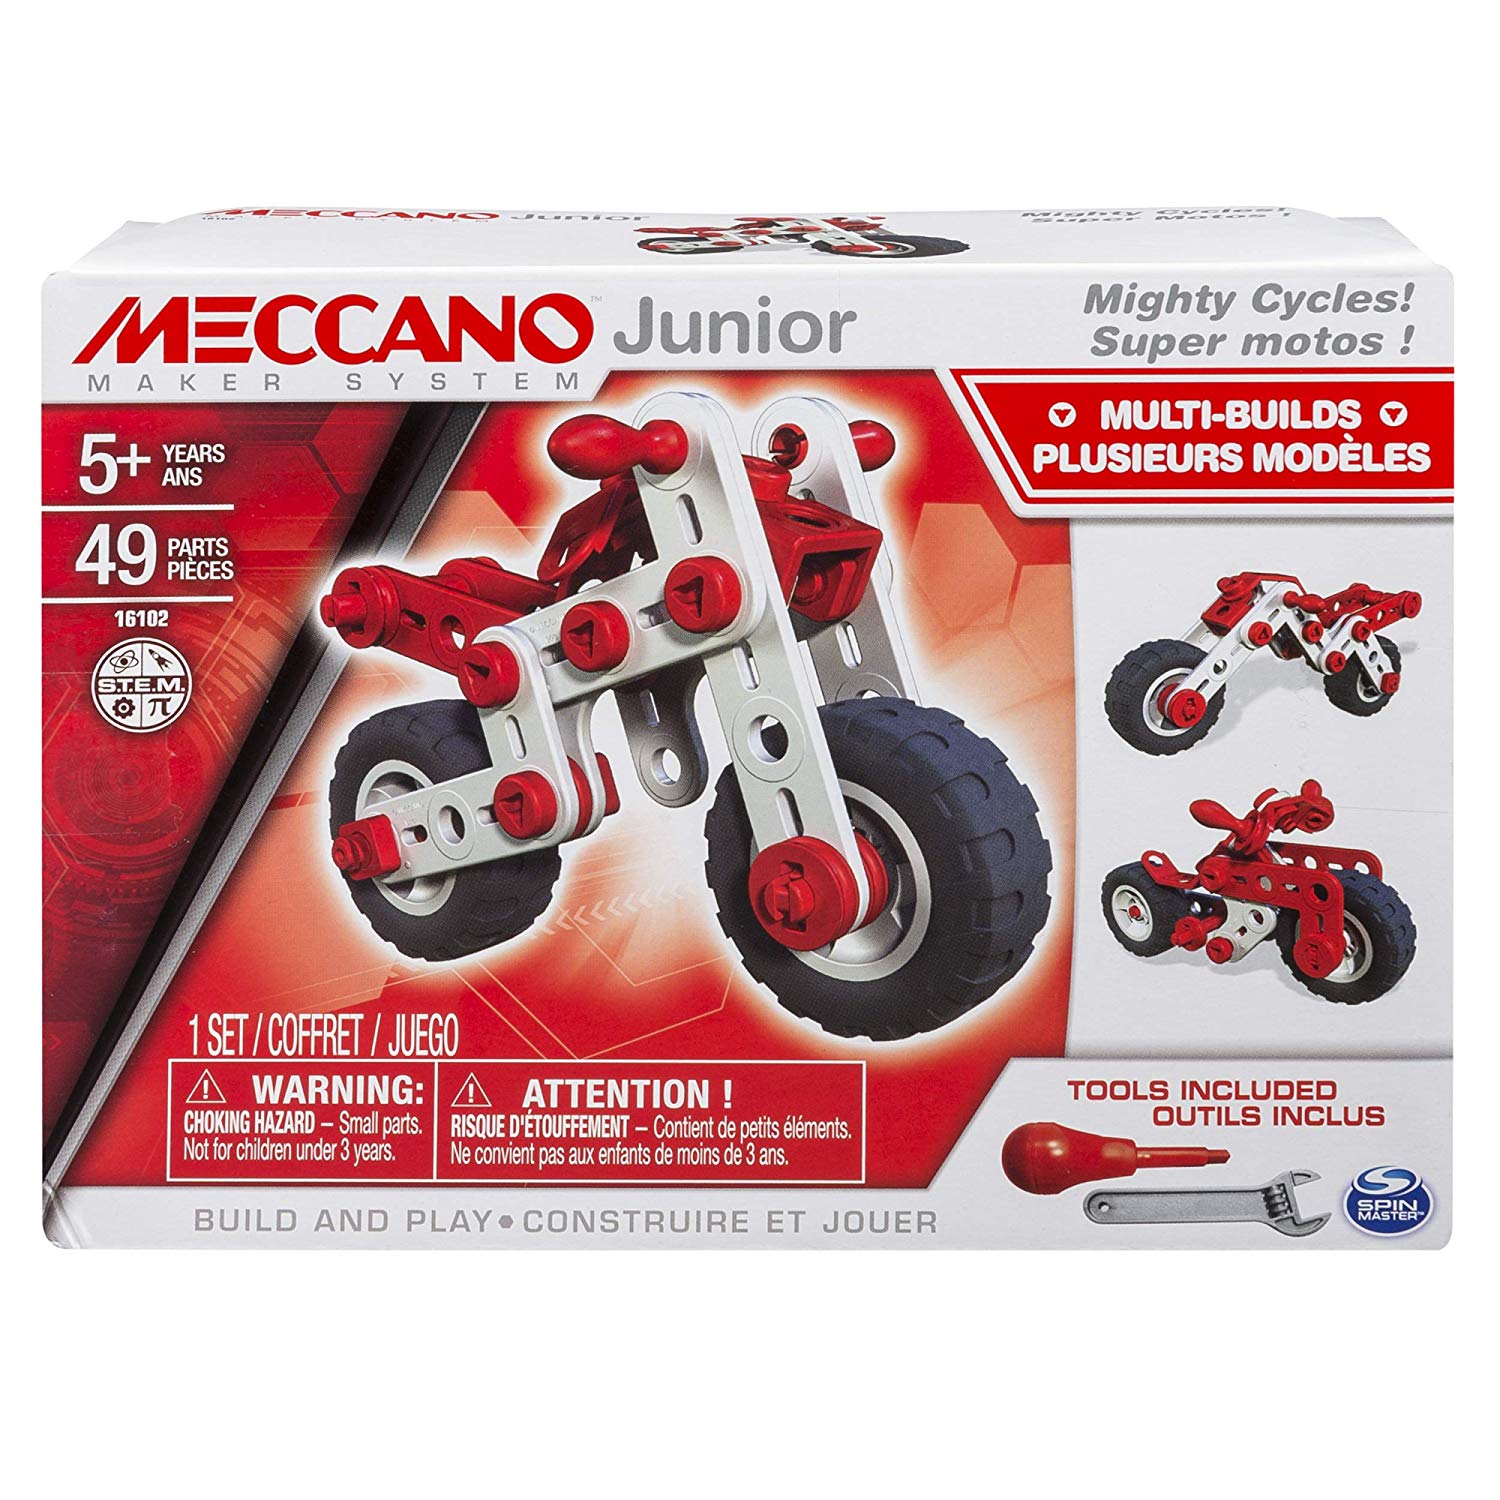 Super Motos Meccano Junior: moto to build